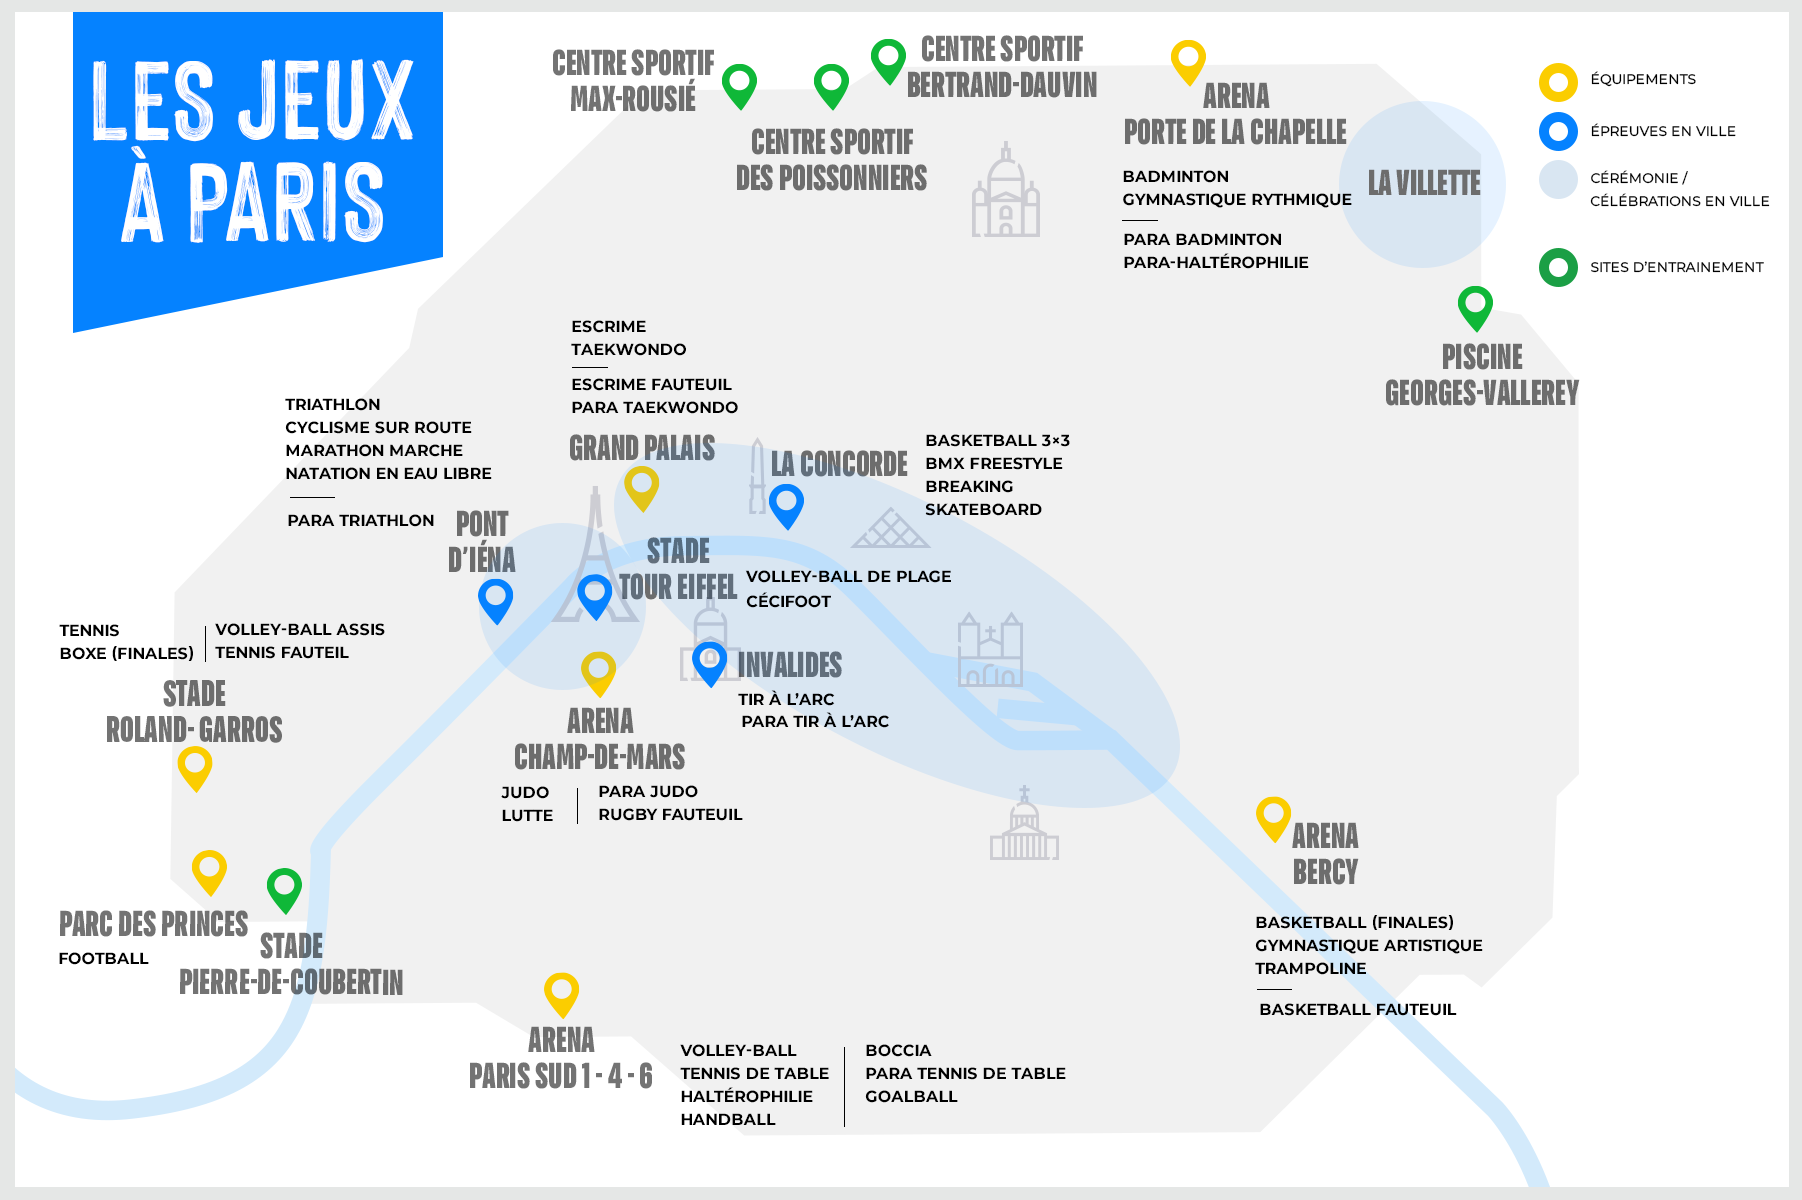 The Paris Games map